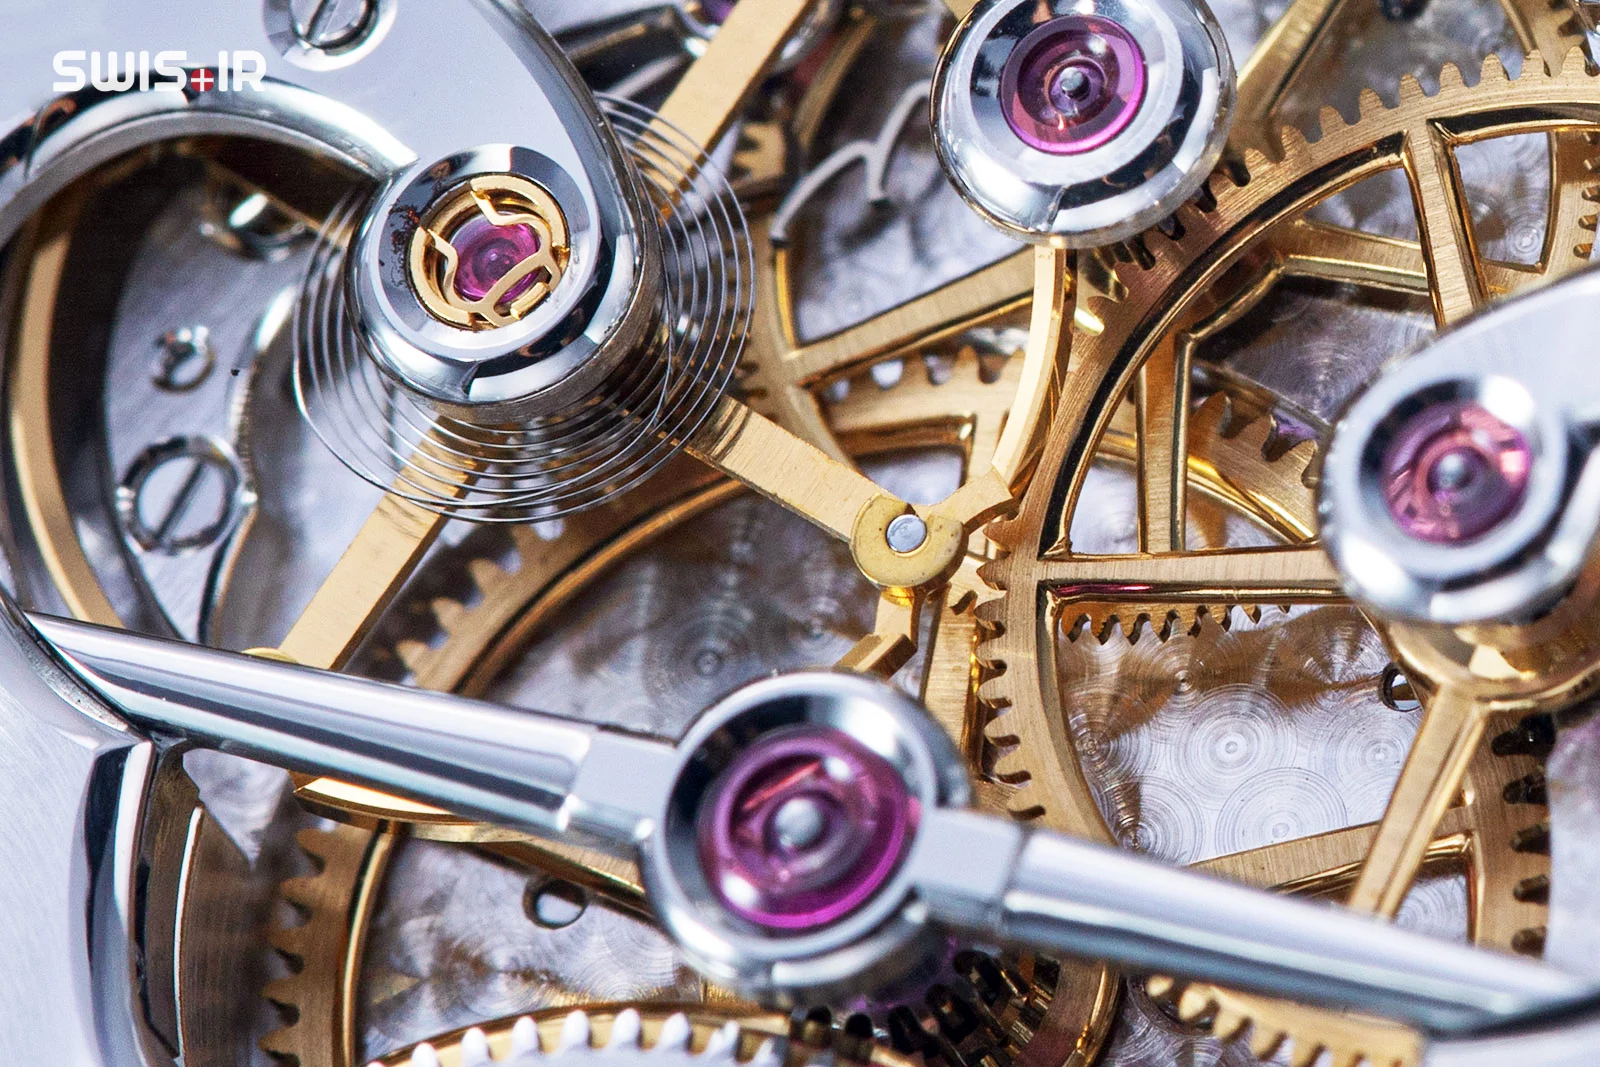 نمونه جواهرات یا سنگهای قیمتی (Jewels) به کار رفته در موتور مکانیکی یک ساعت سوئیسی